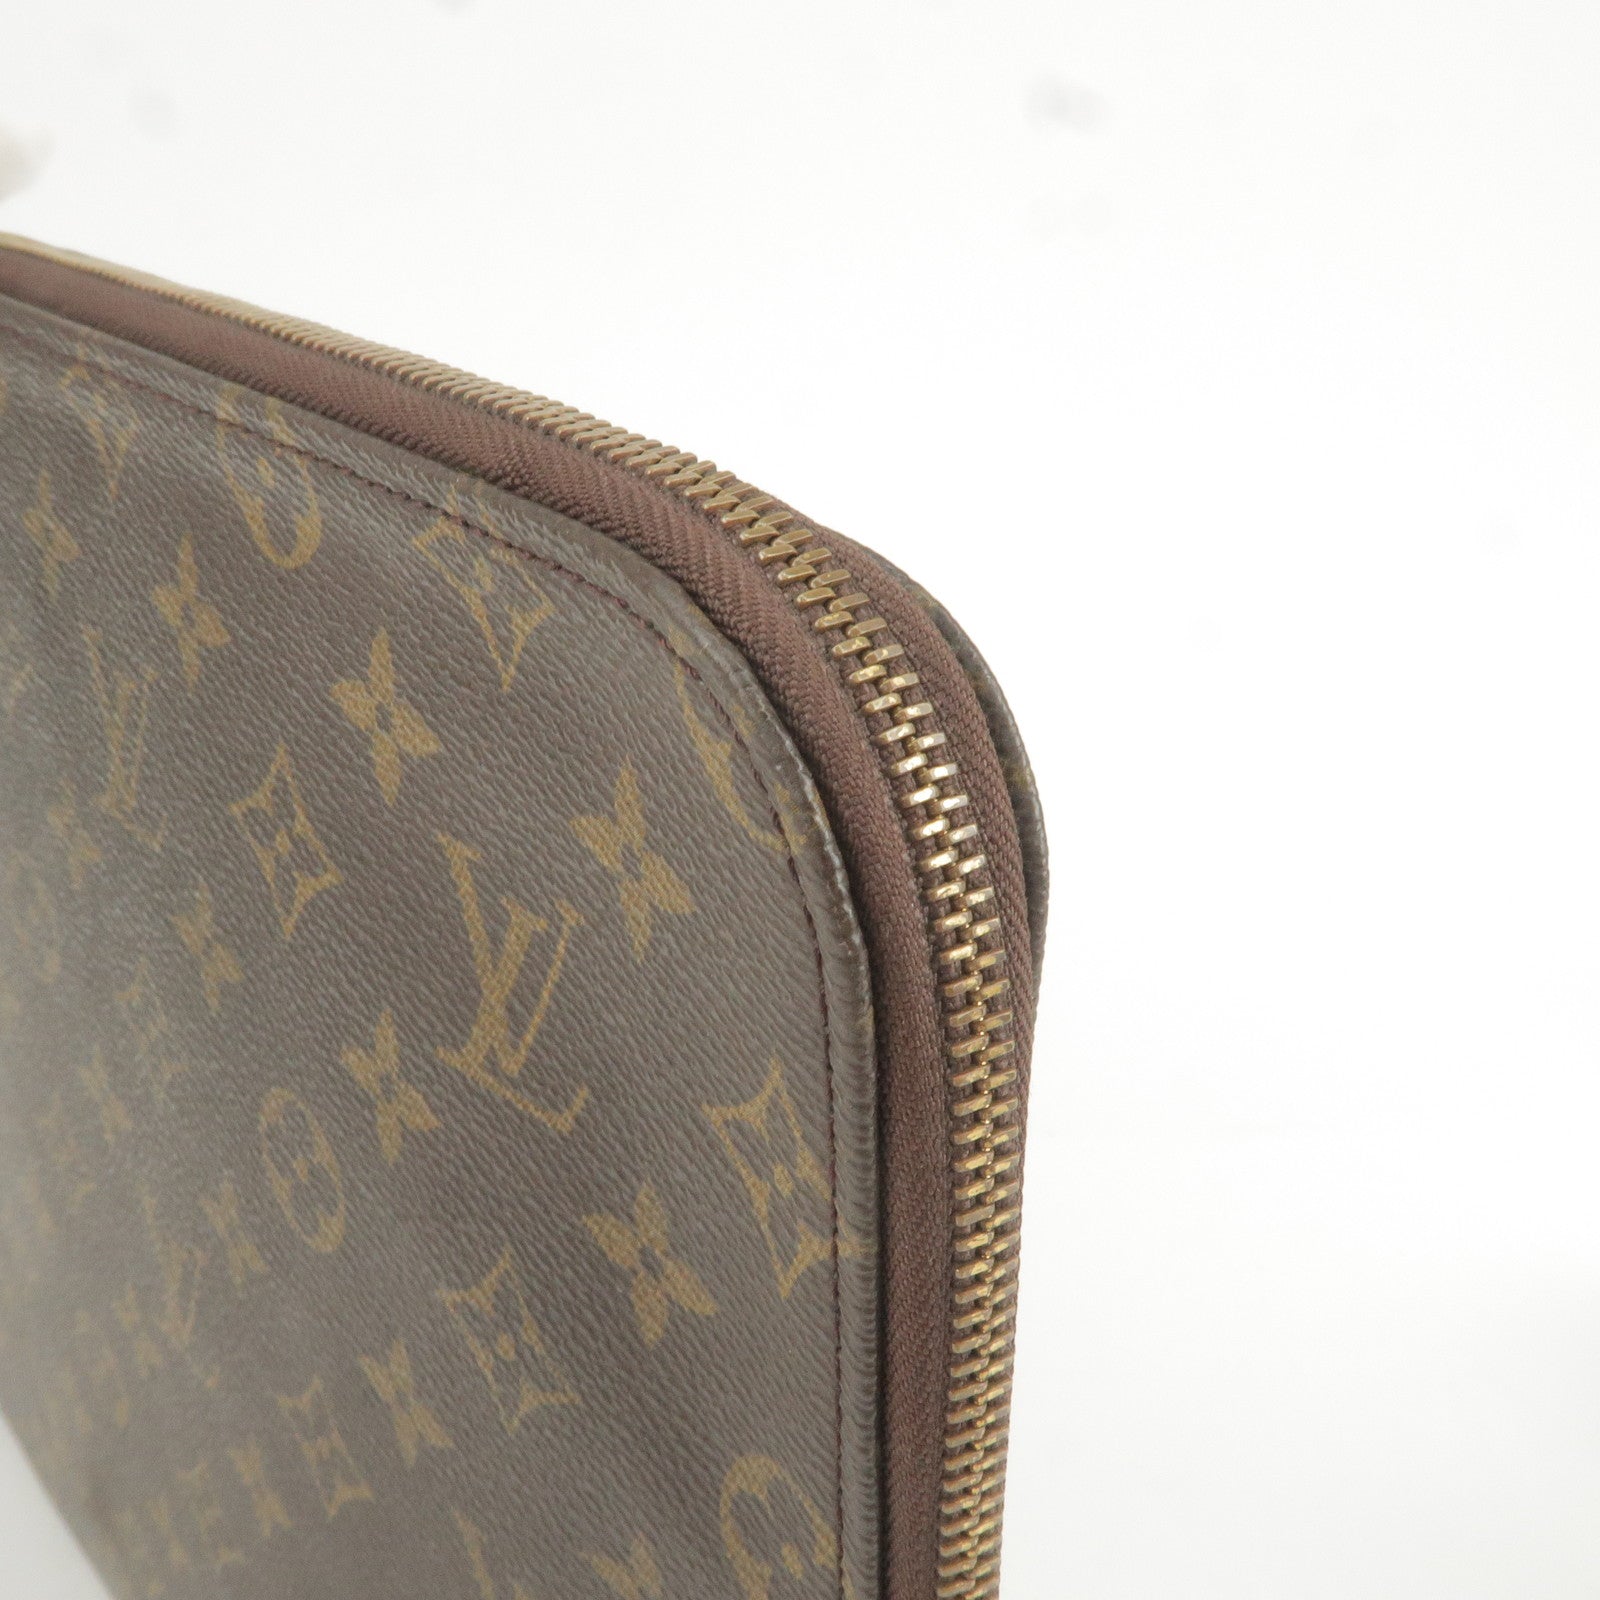 Louis Vuitton document poche laptop case clutch